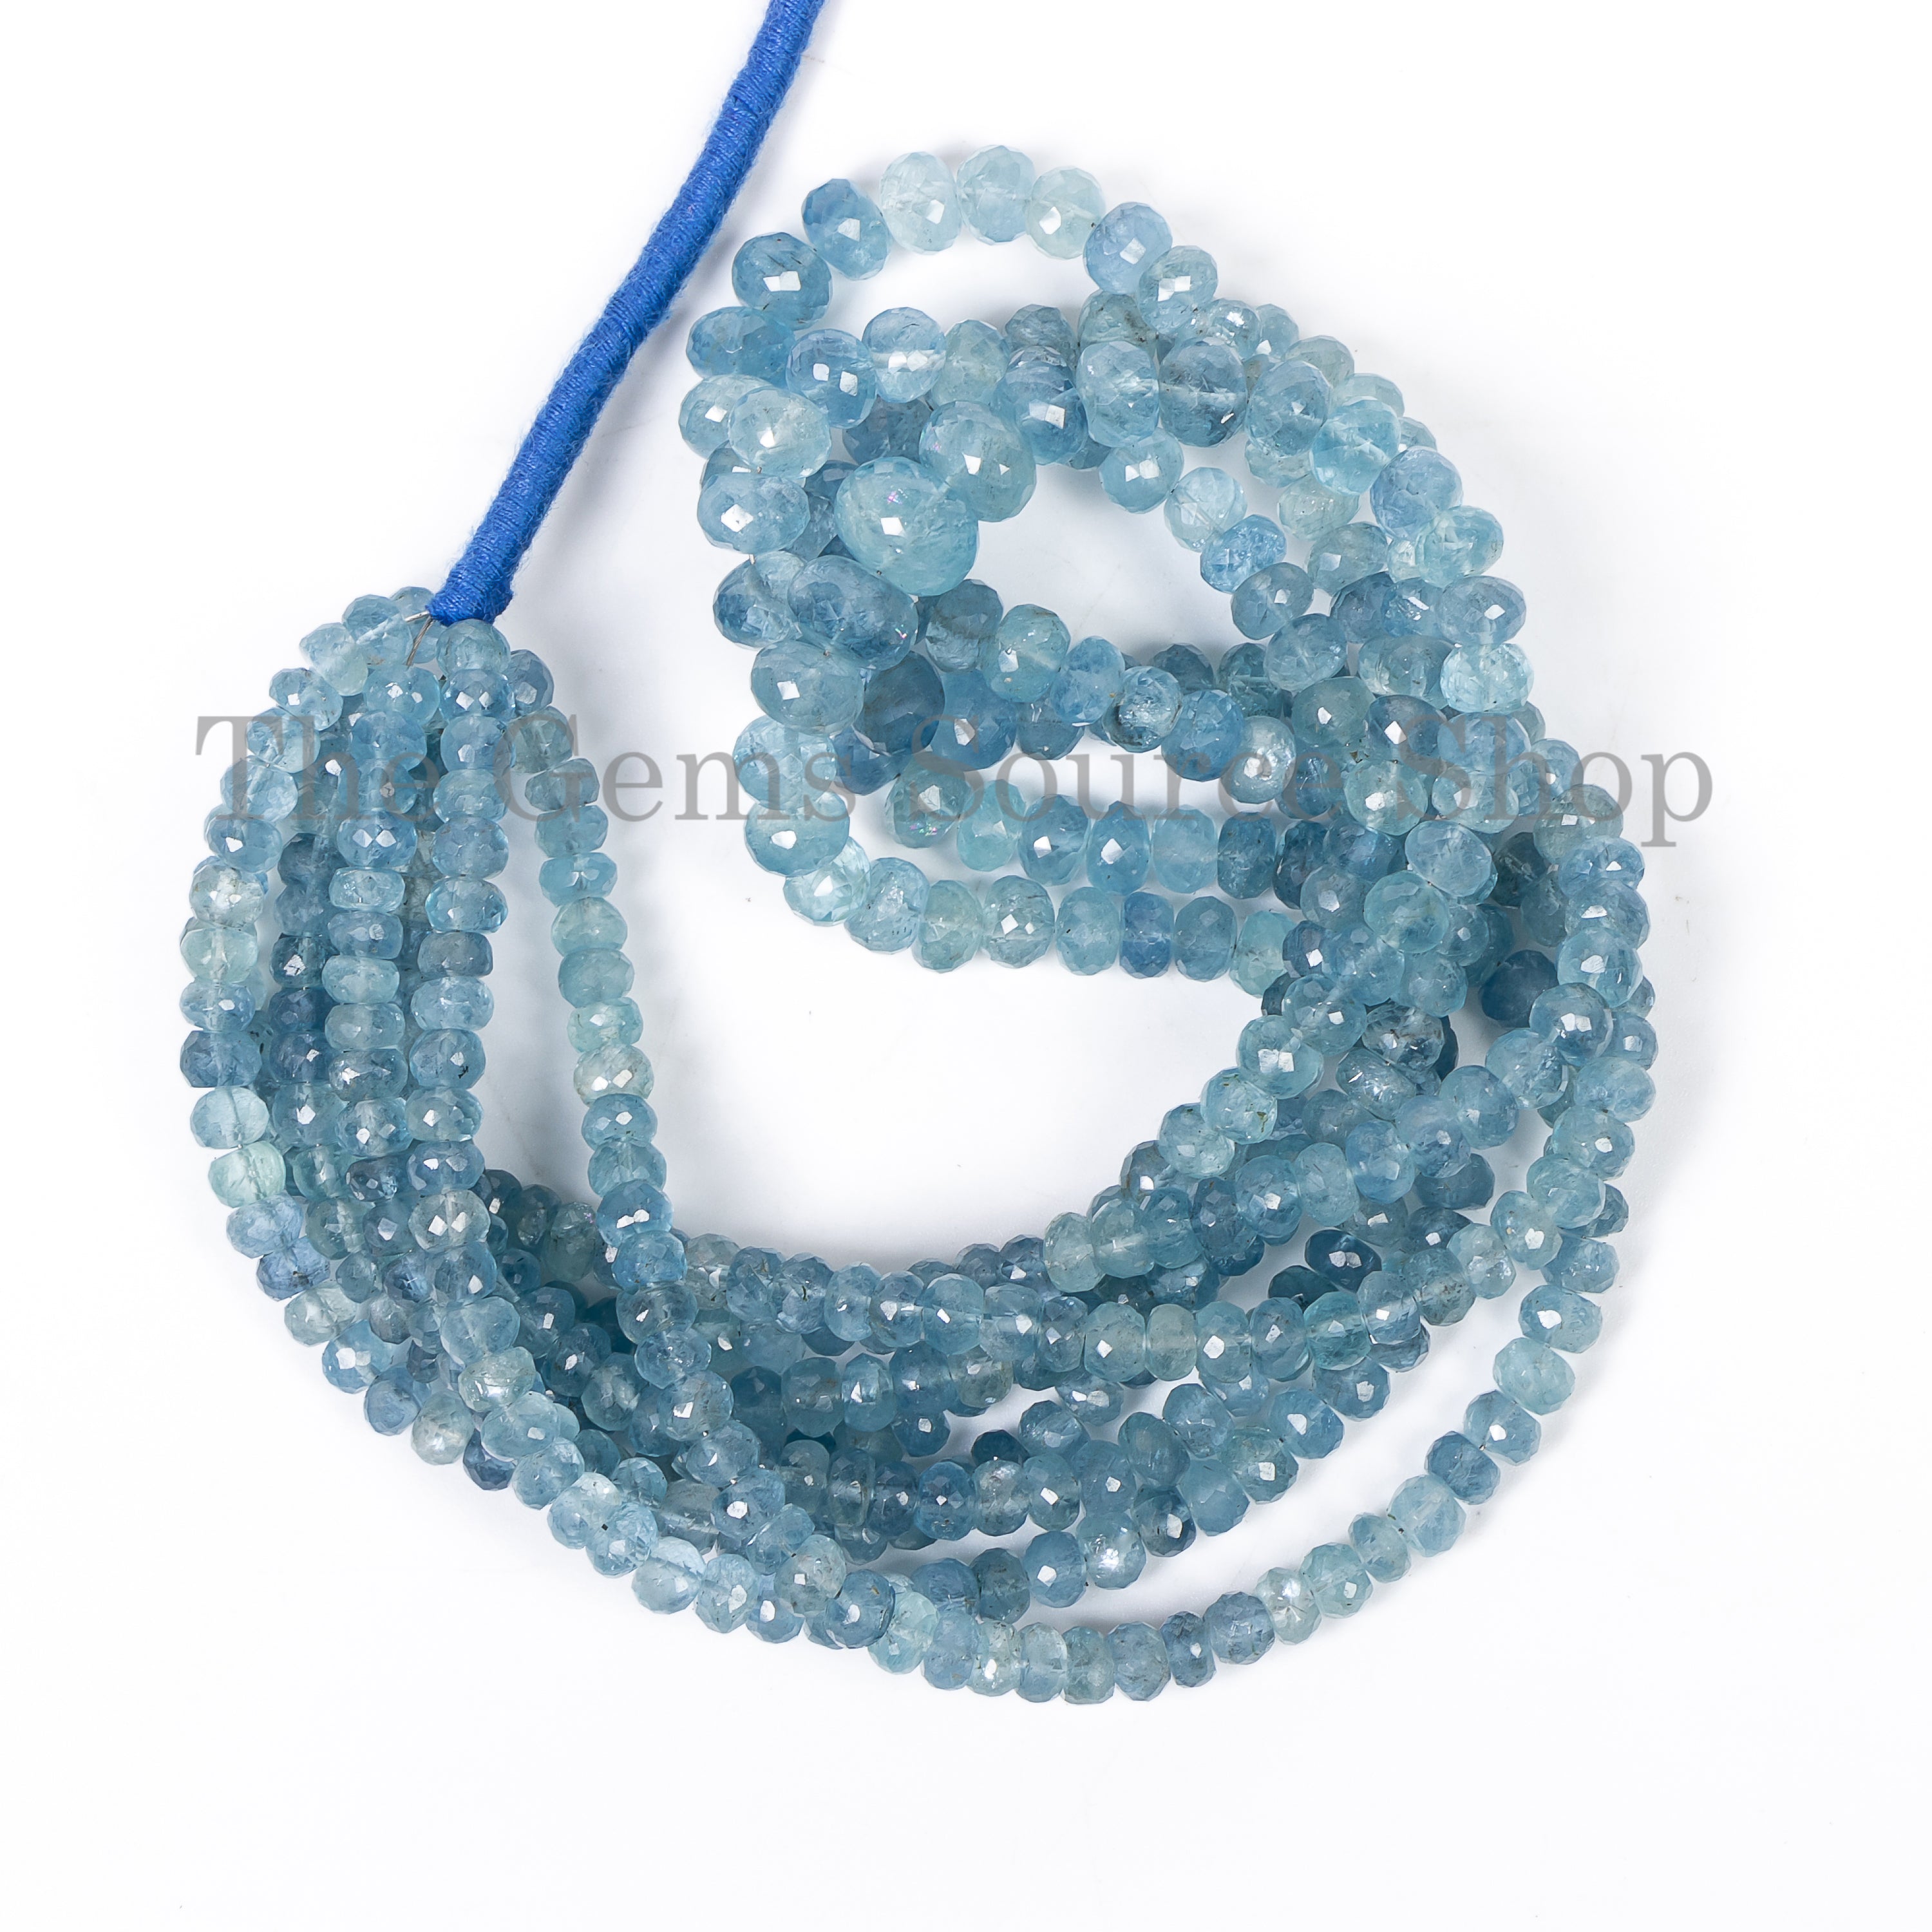 Natural Santa Maria Aquamarine Beads, Aquamarine Faceted Rondelles, Loose Aquamarine TGS-4860